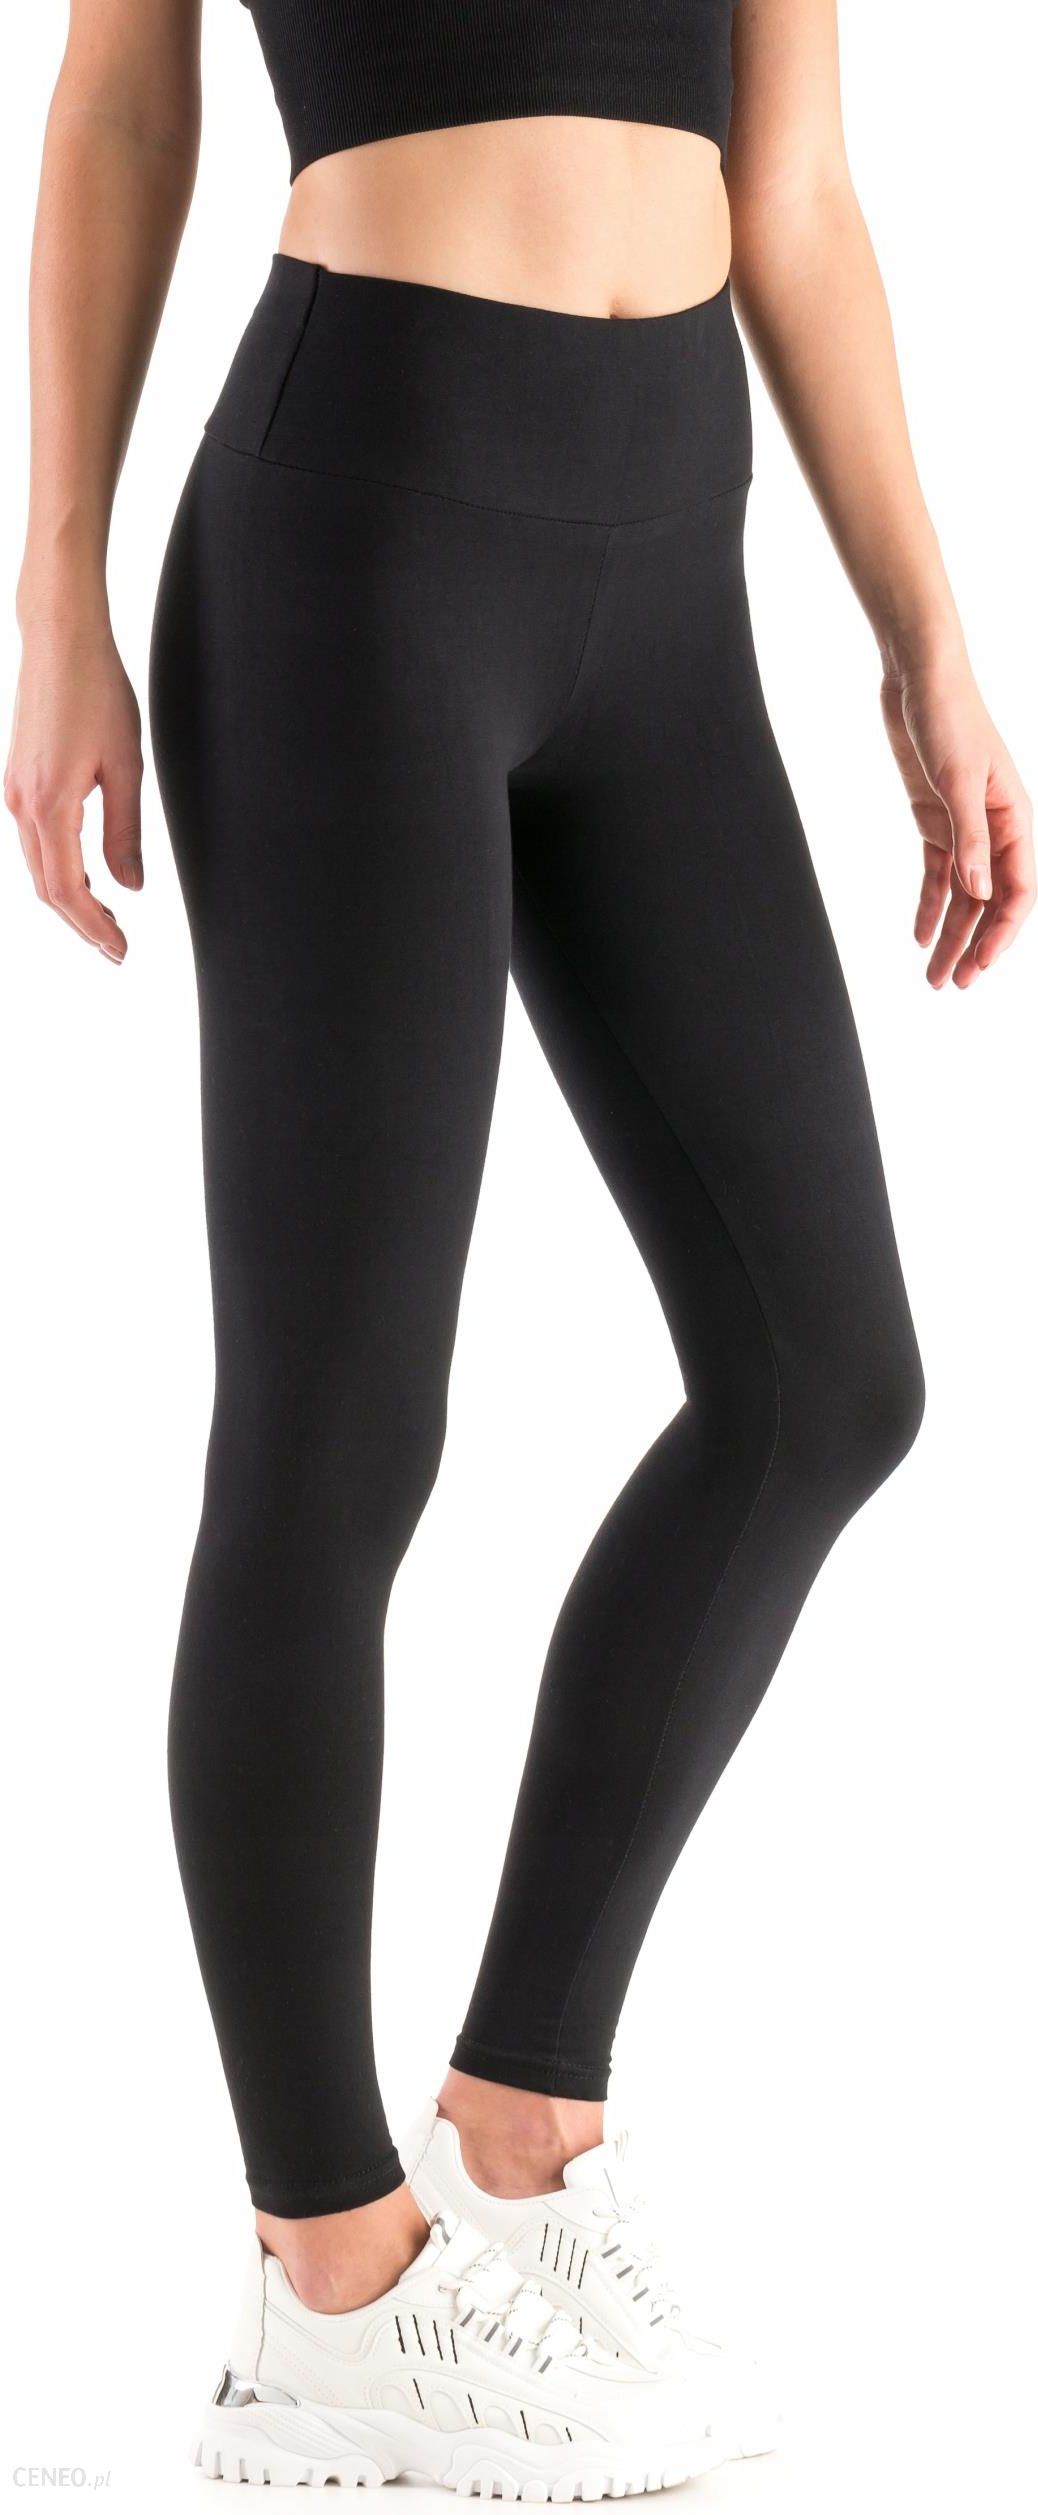 GATTA BLACK BRILLANT legginsy błyszczące kryjące WYSOKI STAN - M/3